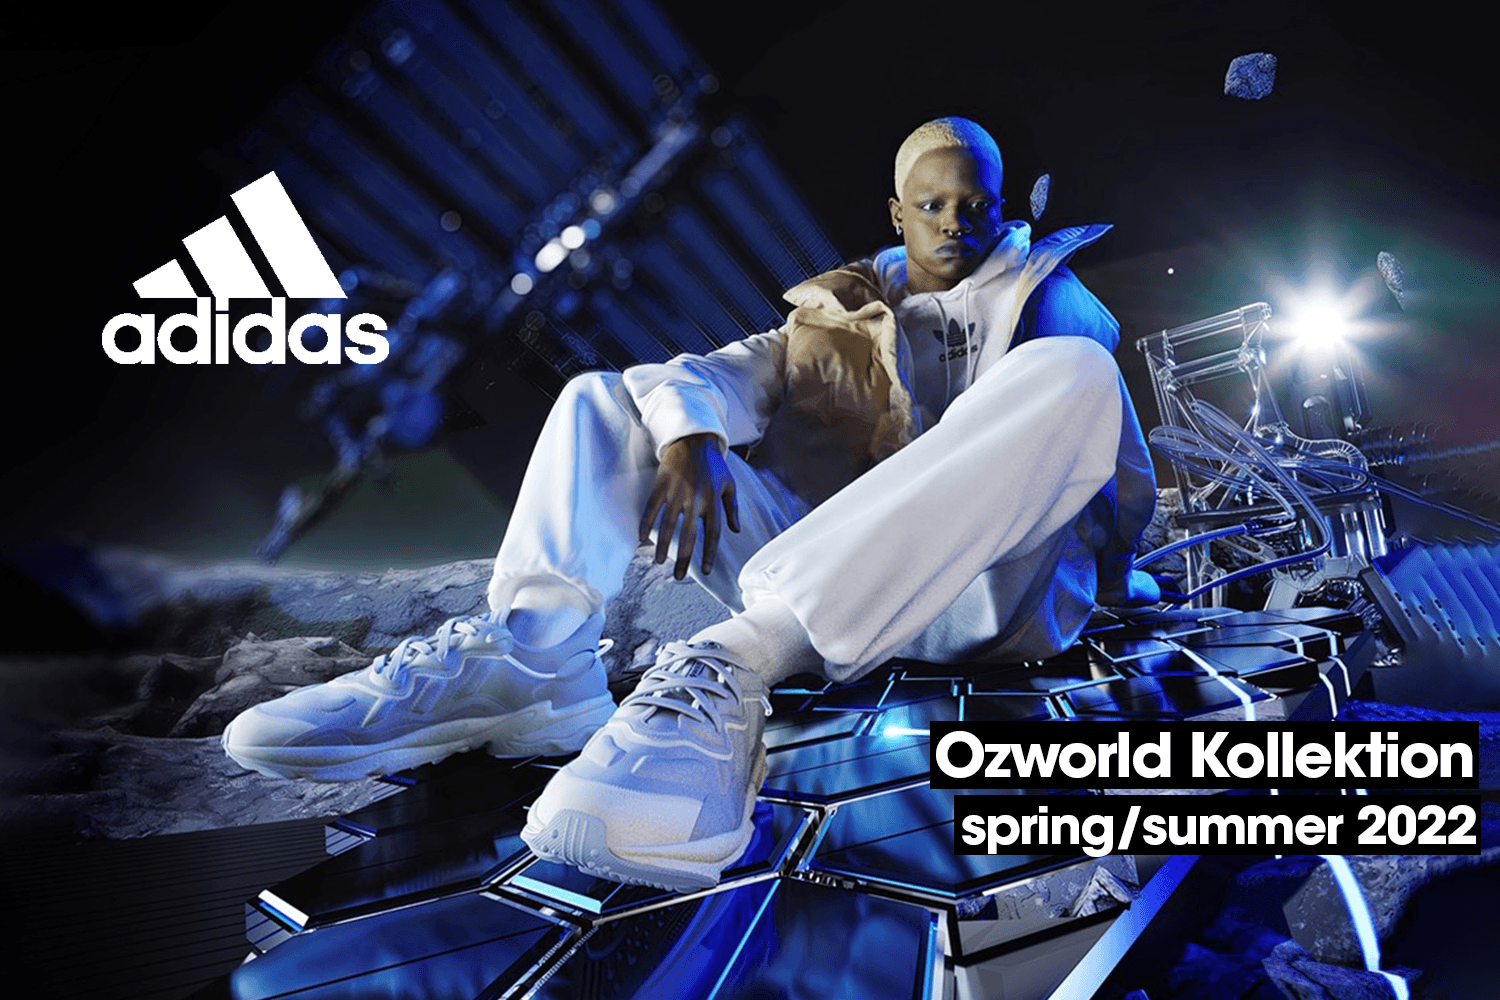 Die Ozworld Kollektion von adidas ist jetzt erhältlich